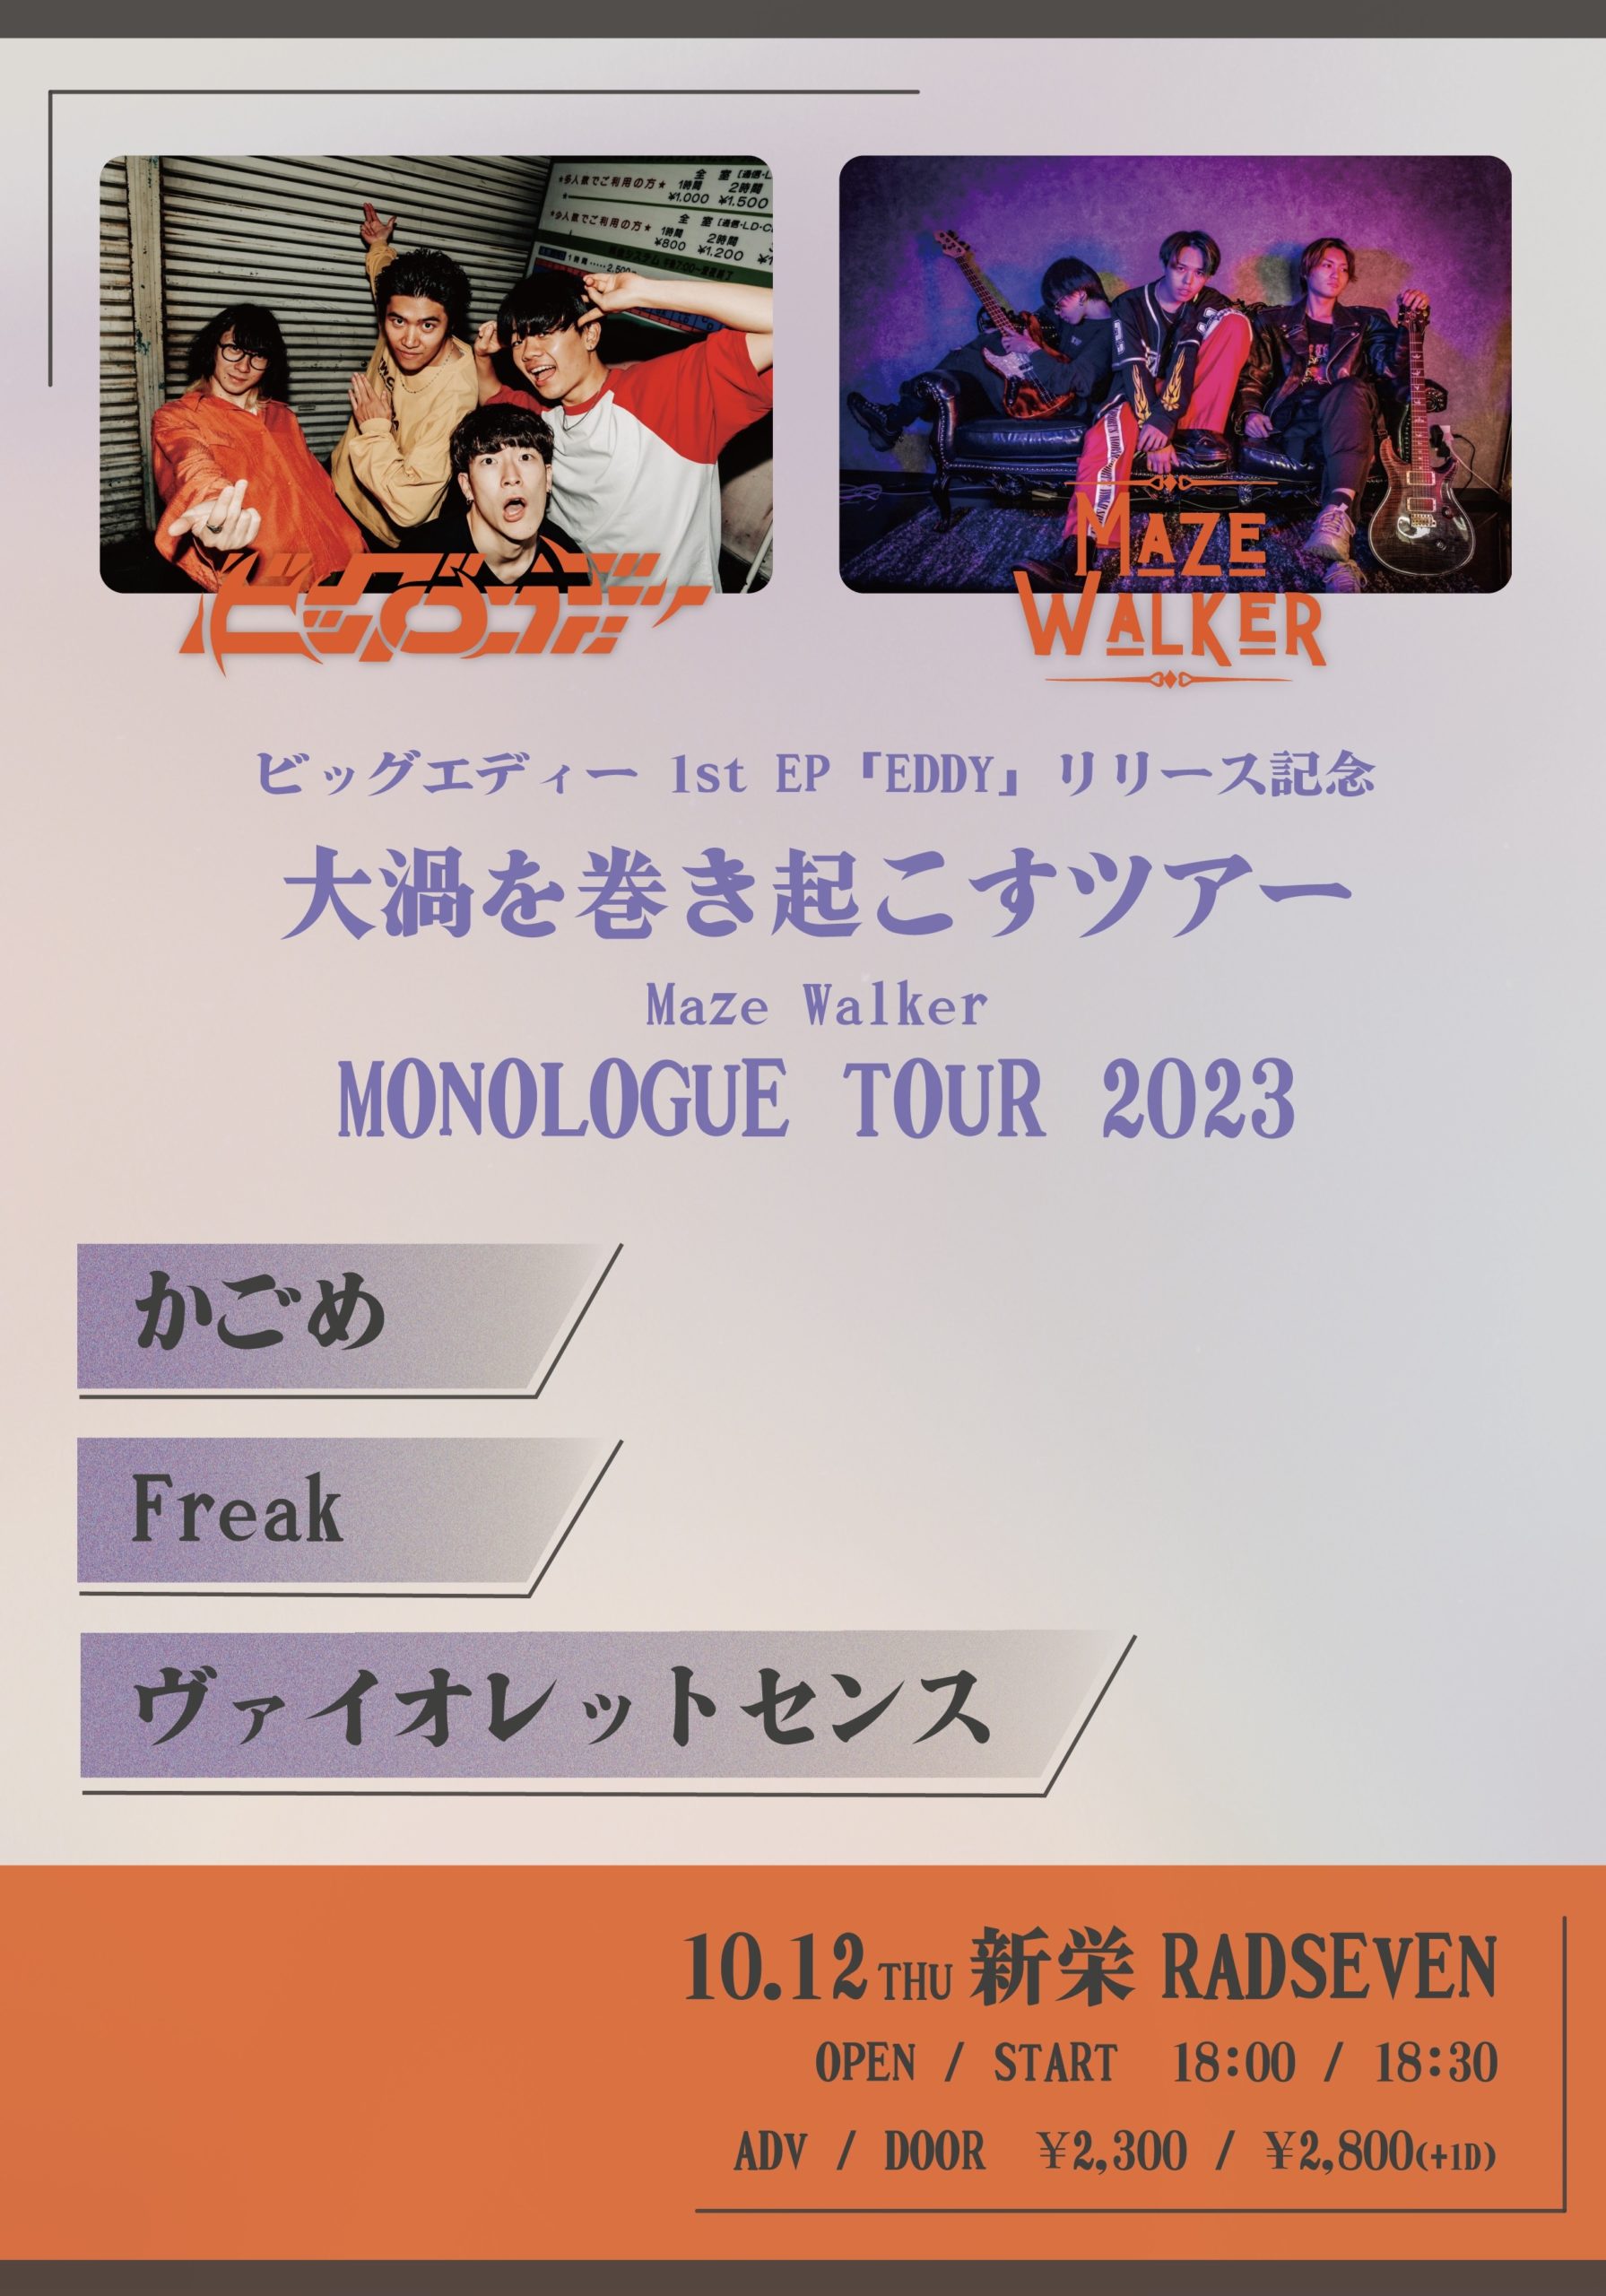 ビッグエディー 1st EP「EDDY」リリース記念 “大渦を巻き起こすツアー” Maze Walker  MONOLOGUE TOUR 2023